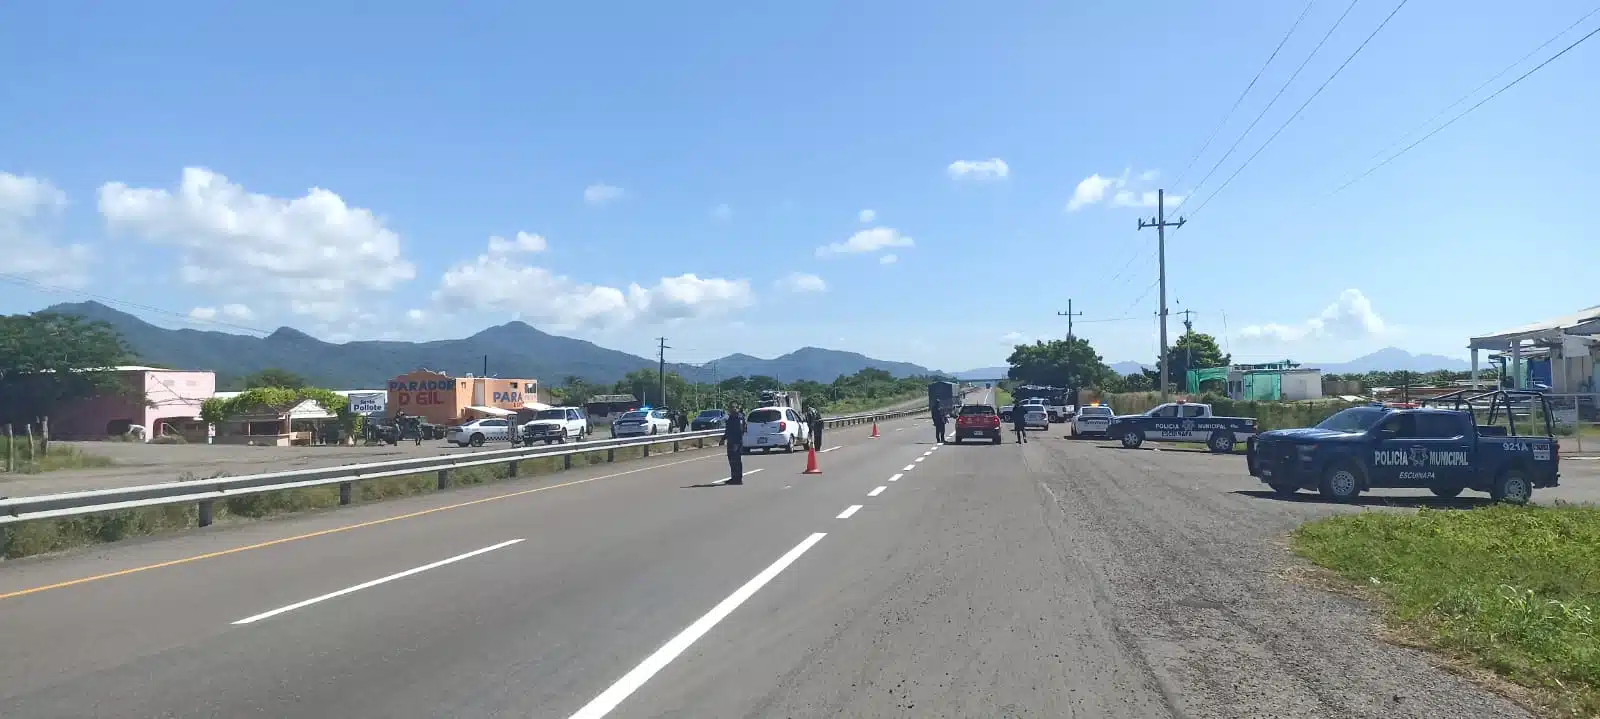 Elementos policiacos en carretera de Escuinapa.